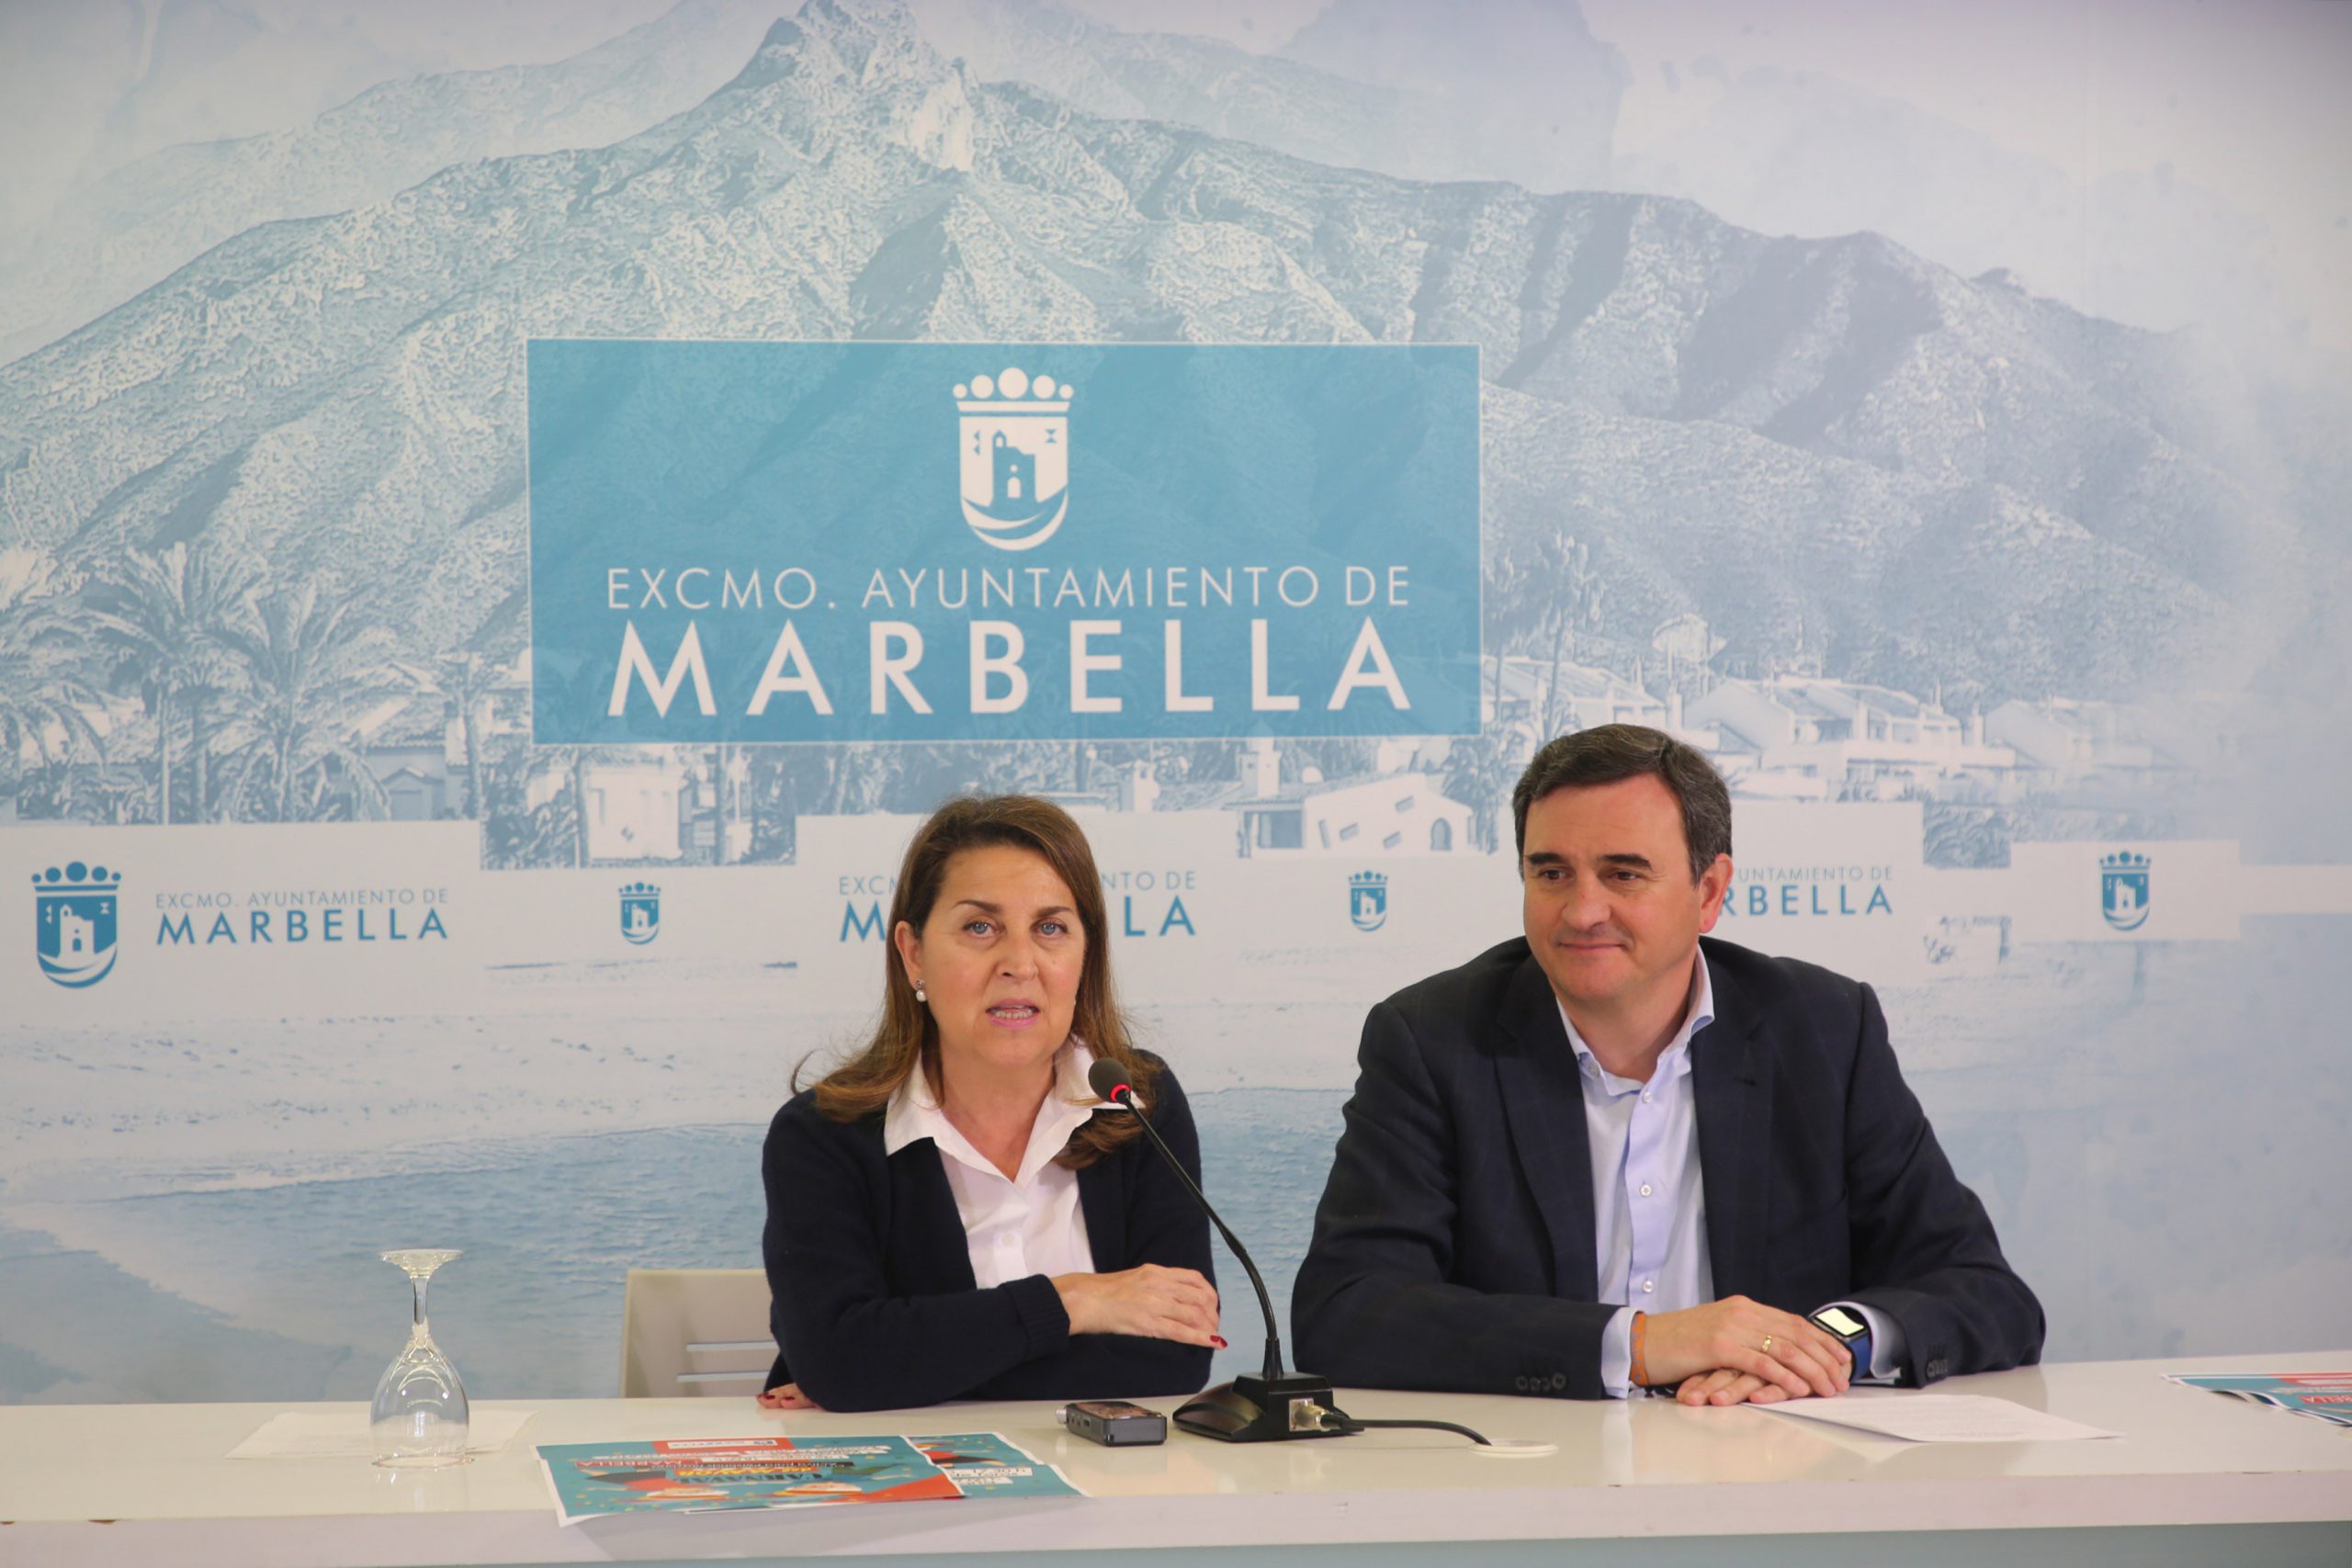 El Ayuntamiento organiza una completa agenda festiva para los Centros de Participación Activa dentro del ‘Carnaval del Mayor 2019’